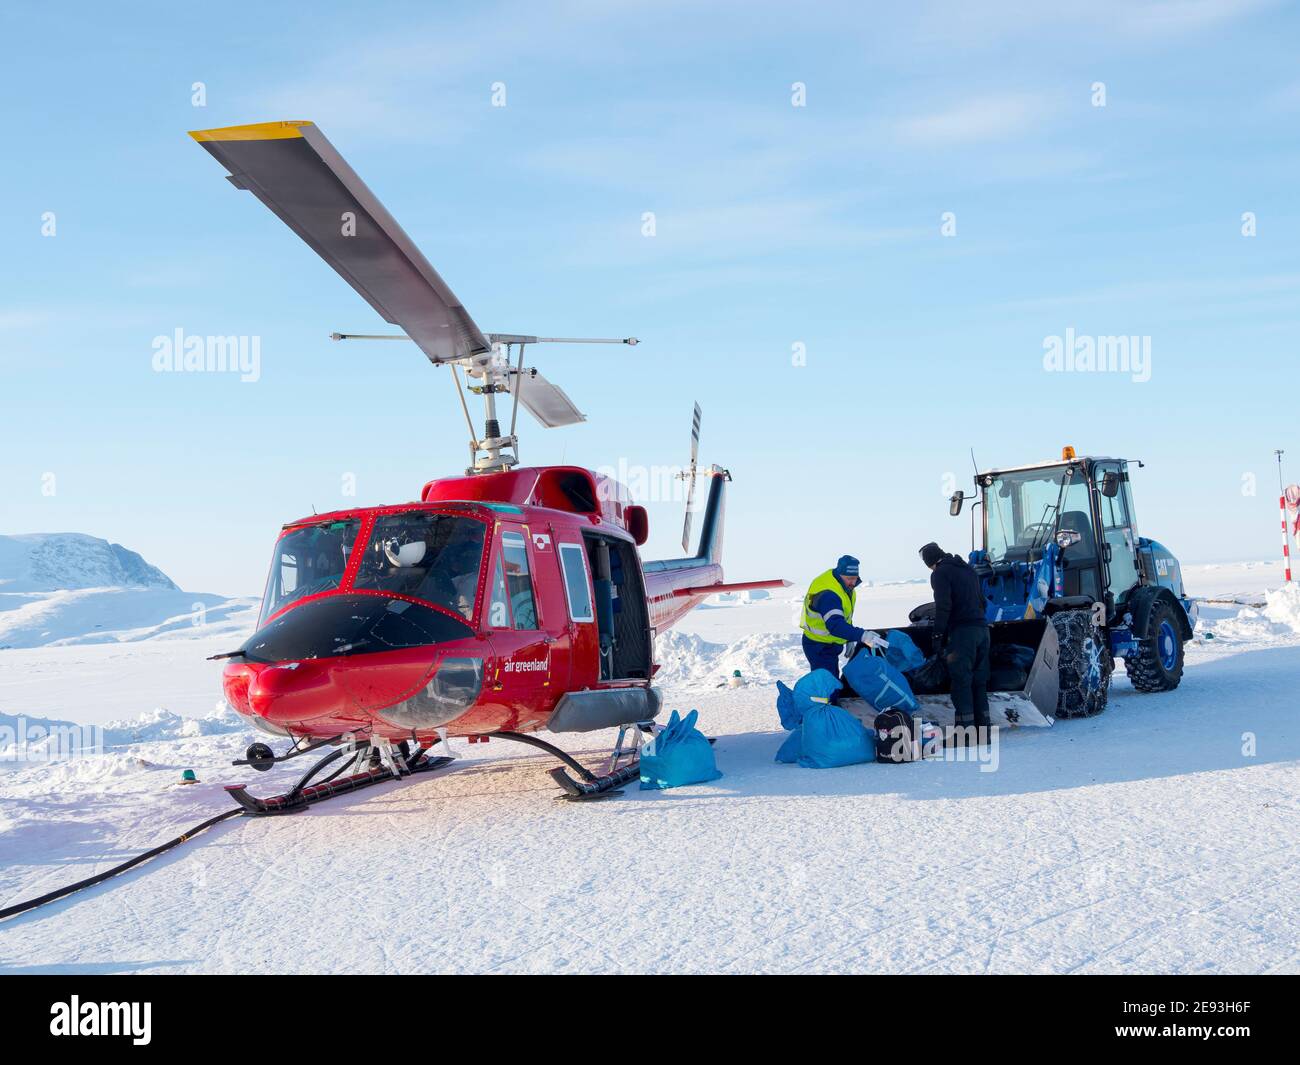 Helikopter auf dem Hubschrauberlandeplatz. Im Winter ist der Hubschrauber die einzige Verbindung zum Rest Grönlands. Das traditionelle Dorf Kullorsuaq am Ufer des Stockfoto